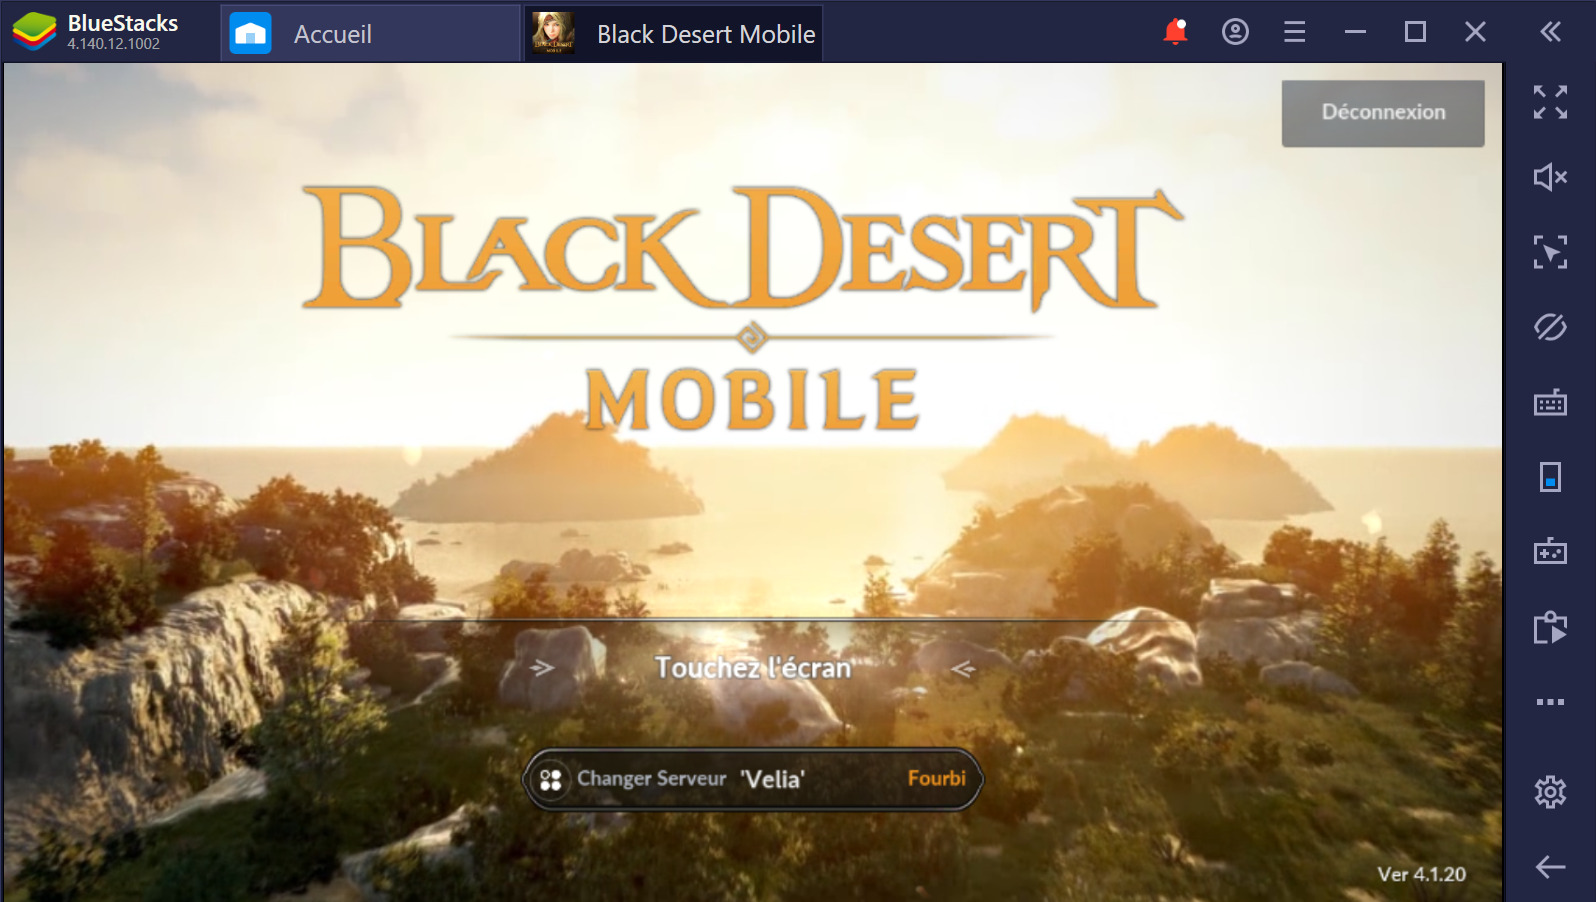 Black Desert Mobile sur PC : Comment monter rapidement en niveau